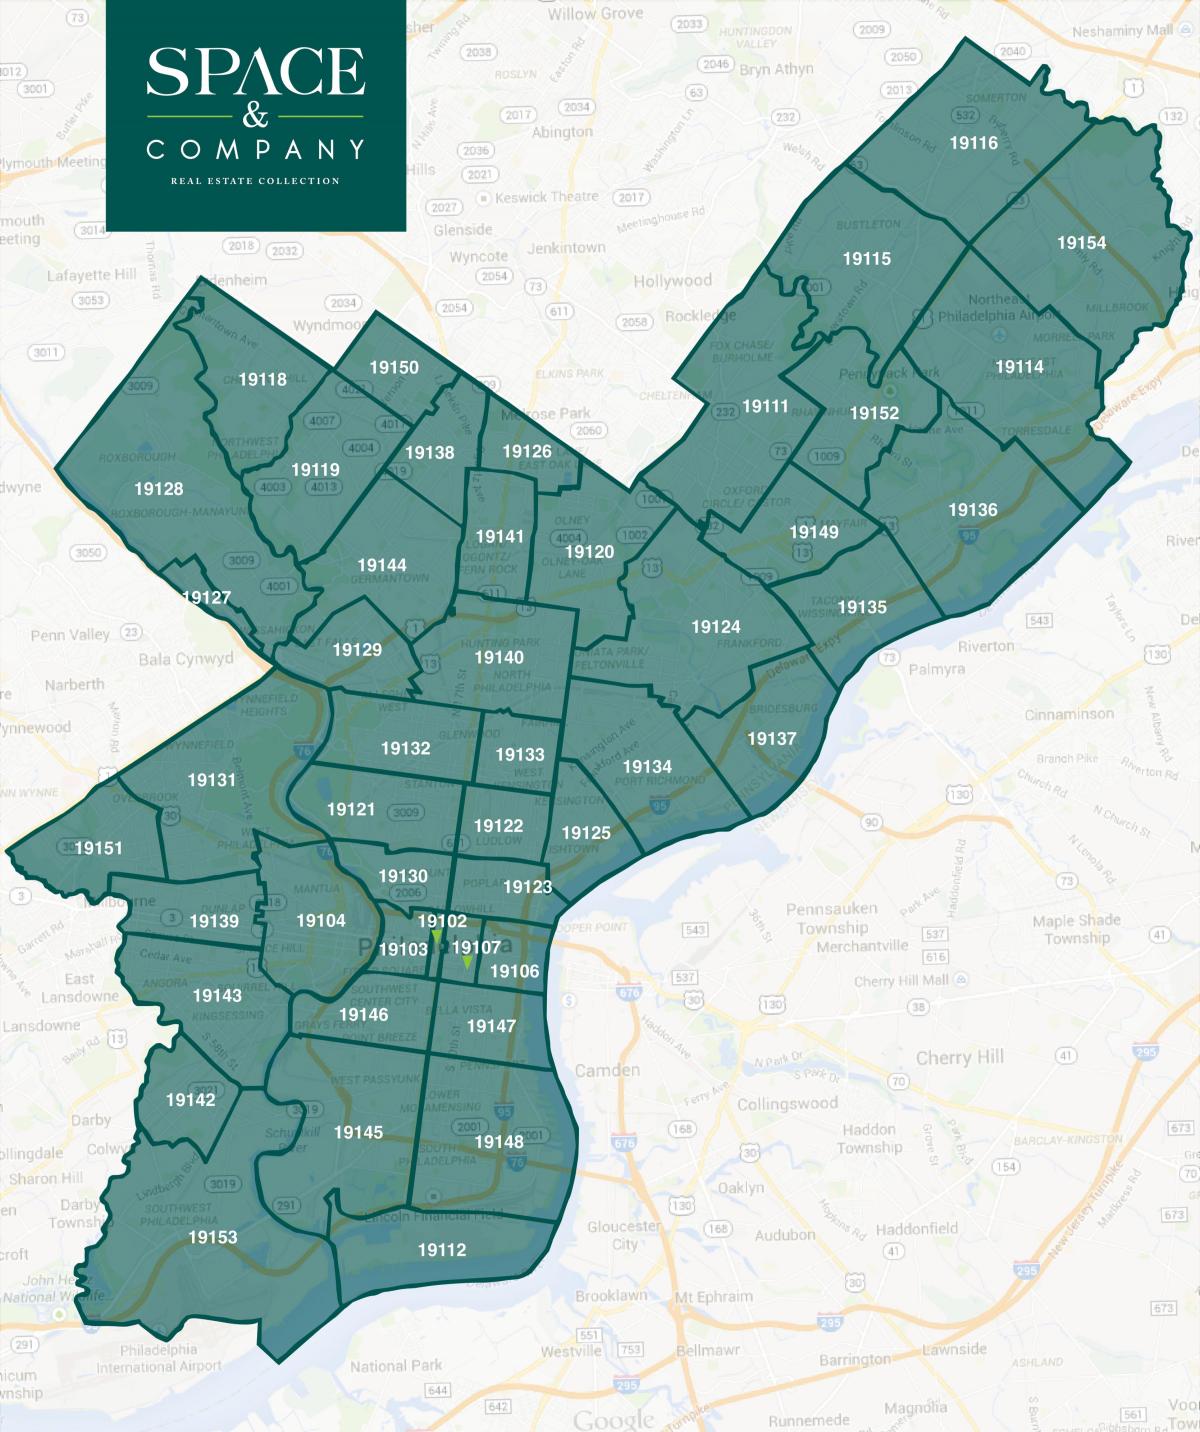 χάρτης της Φιλαδέλφειας γειτονιές και ταχυδρομικοί κώδικες